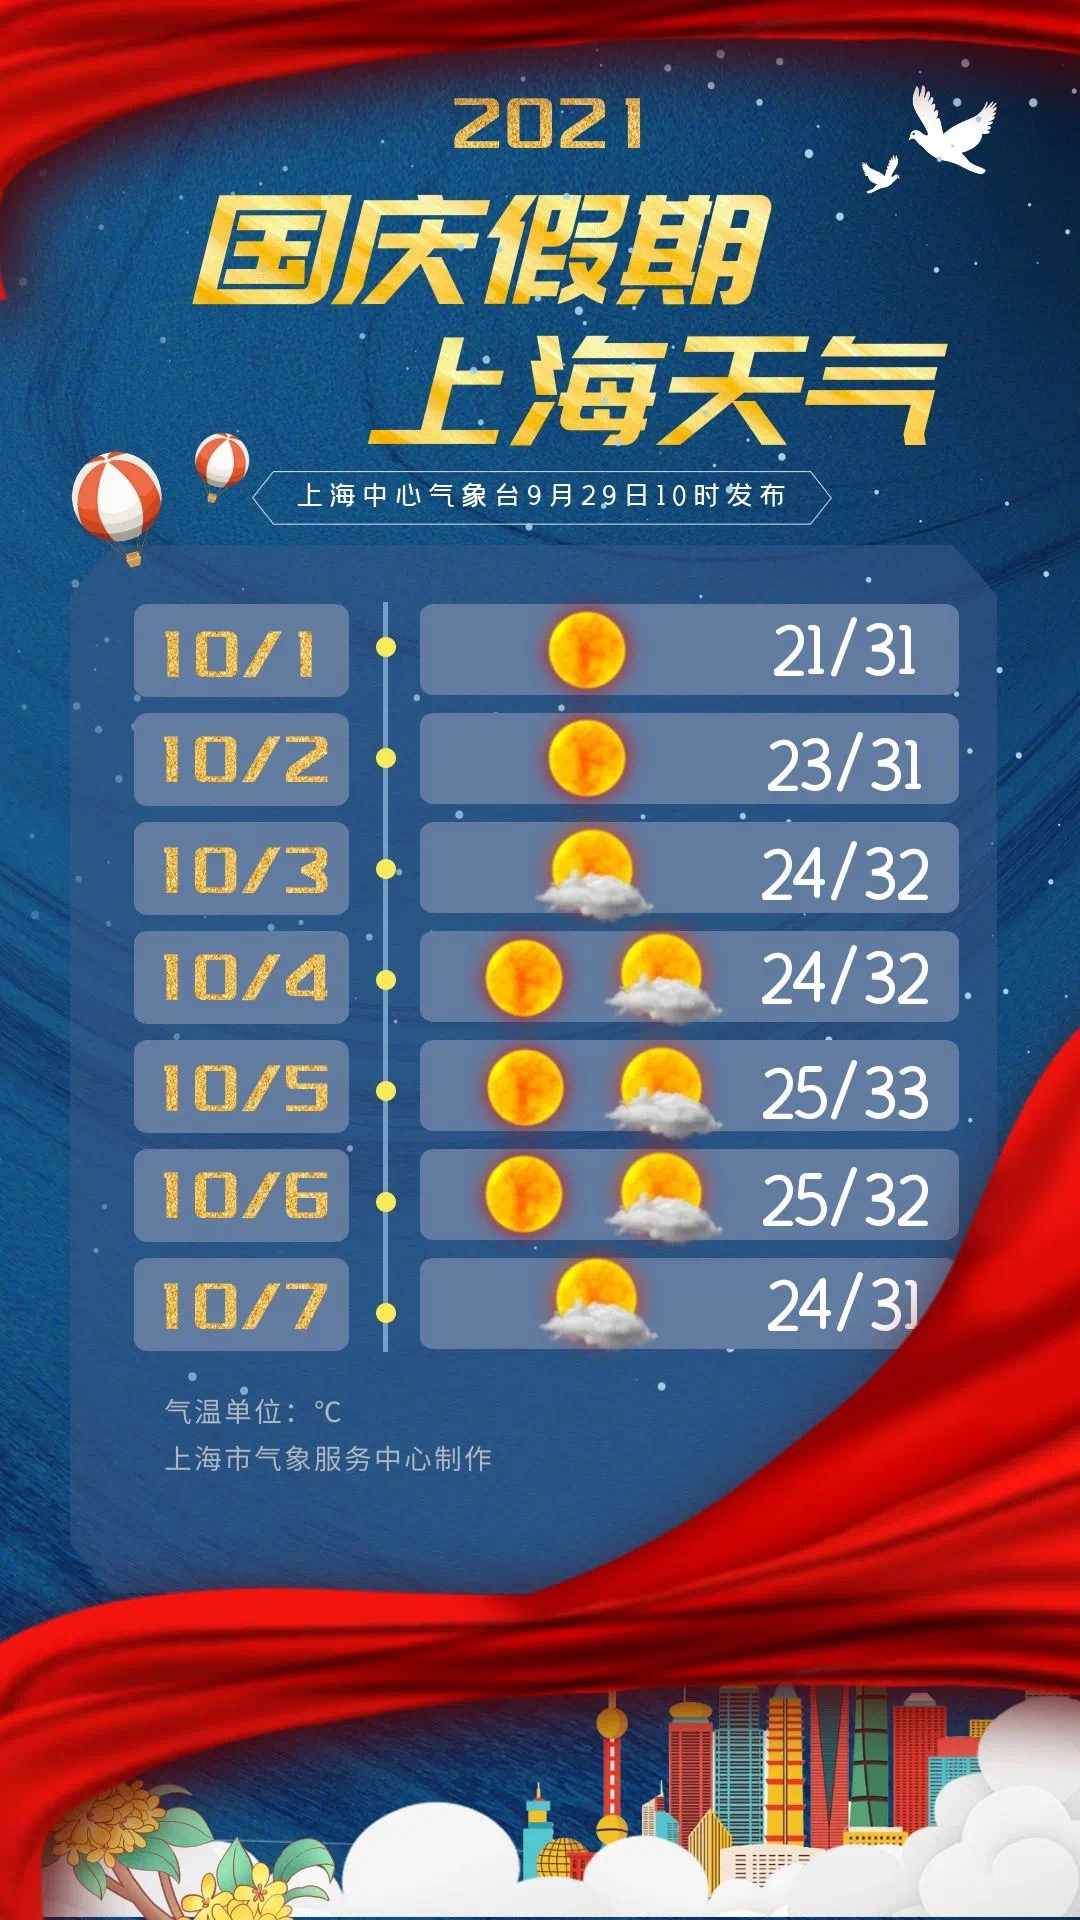 上海国庆天气预报新鲜出炉!天气晴朗气温偏高